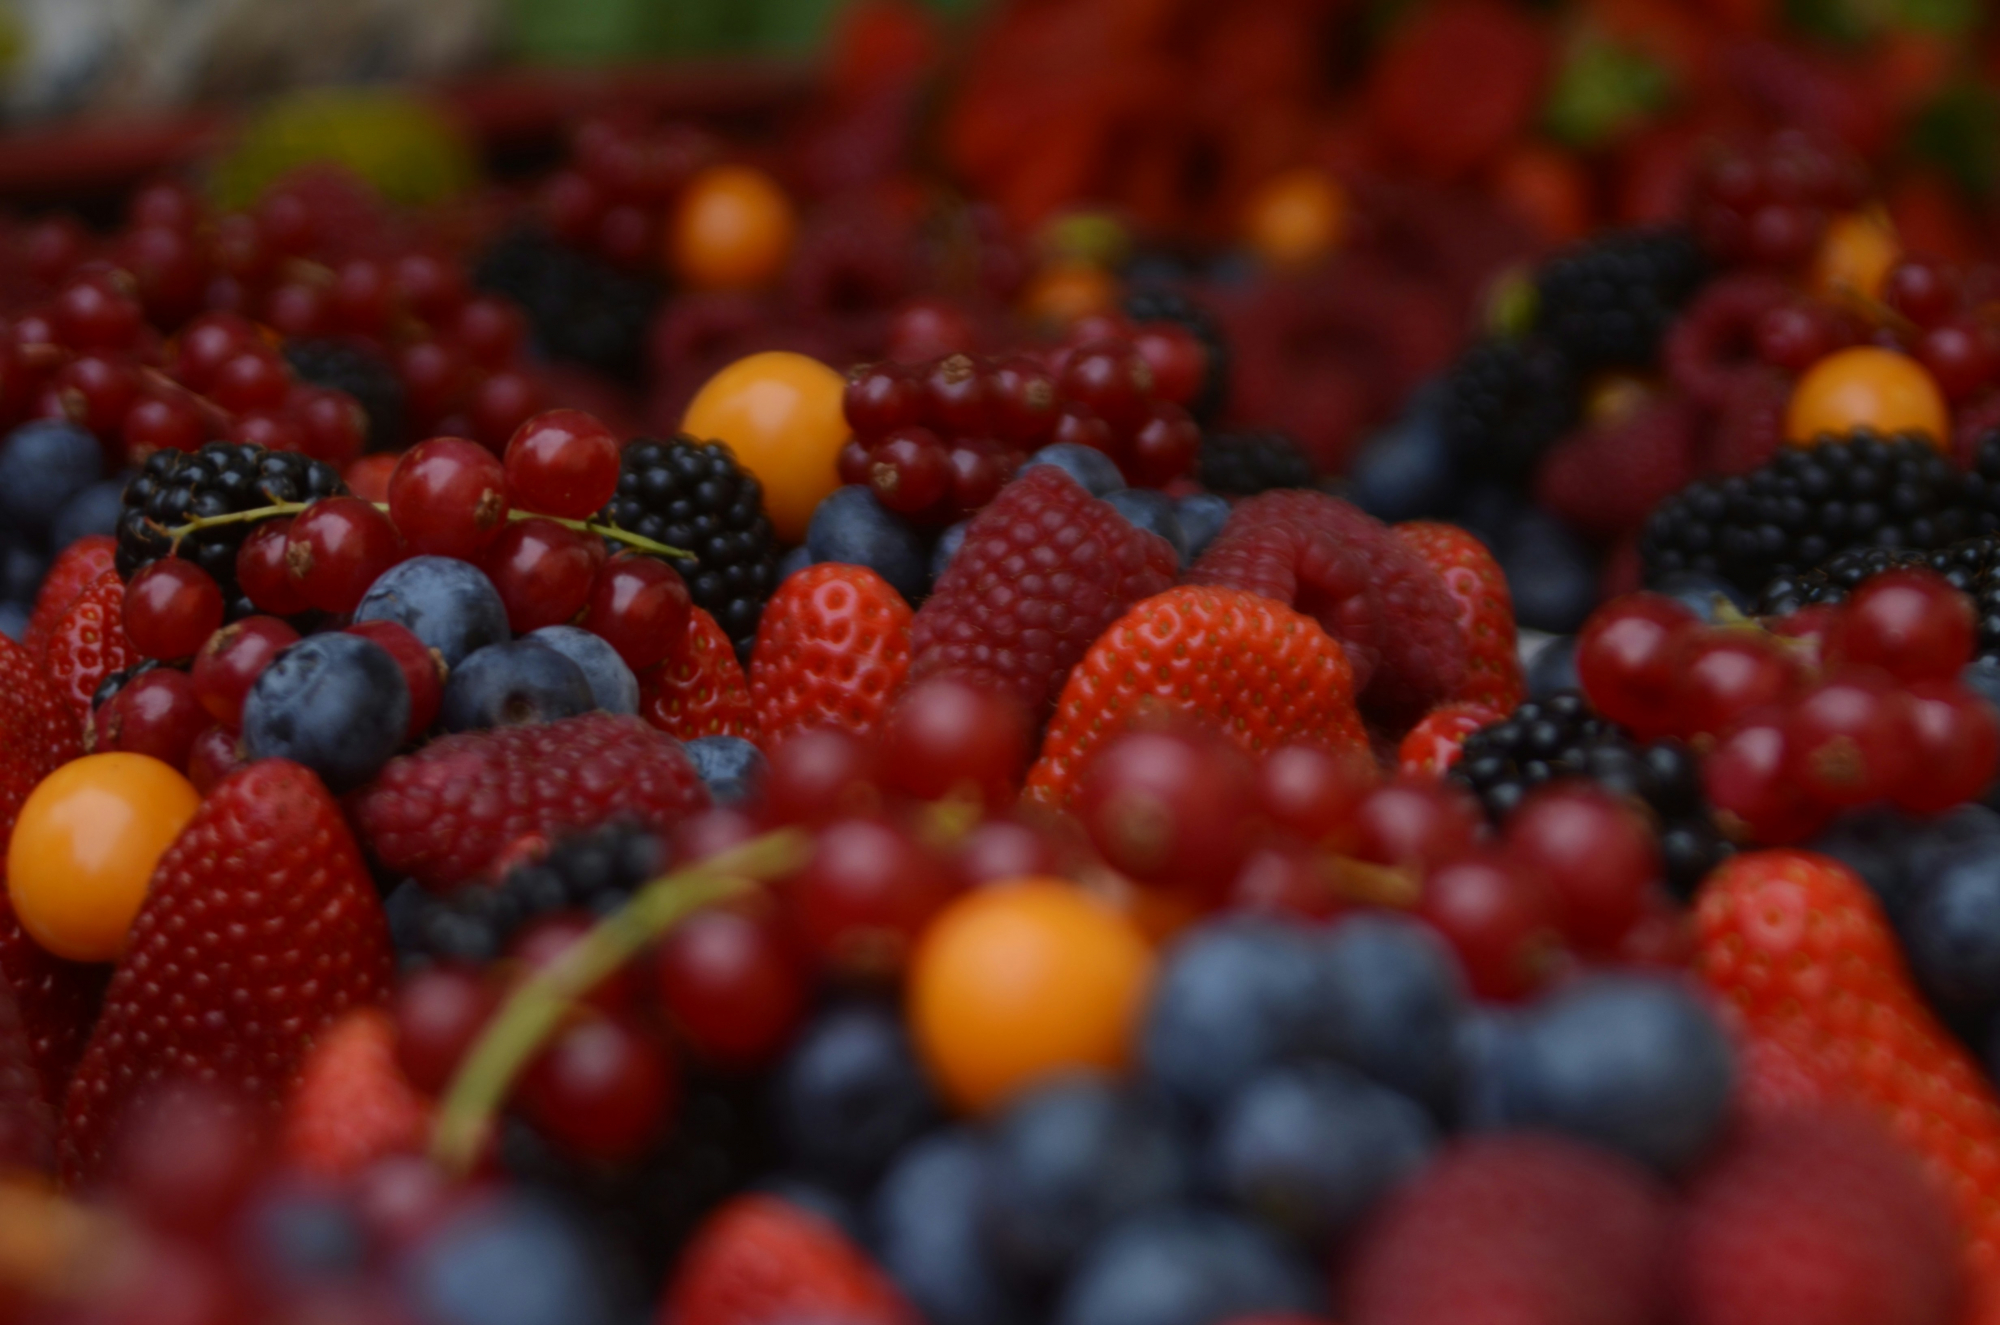 découvrez tous les bienfaits des cranberries, de délicieuses baies rouges riches en antioxydants, et apprenez comment les incorporer dans votre alimentation quotidienne.